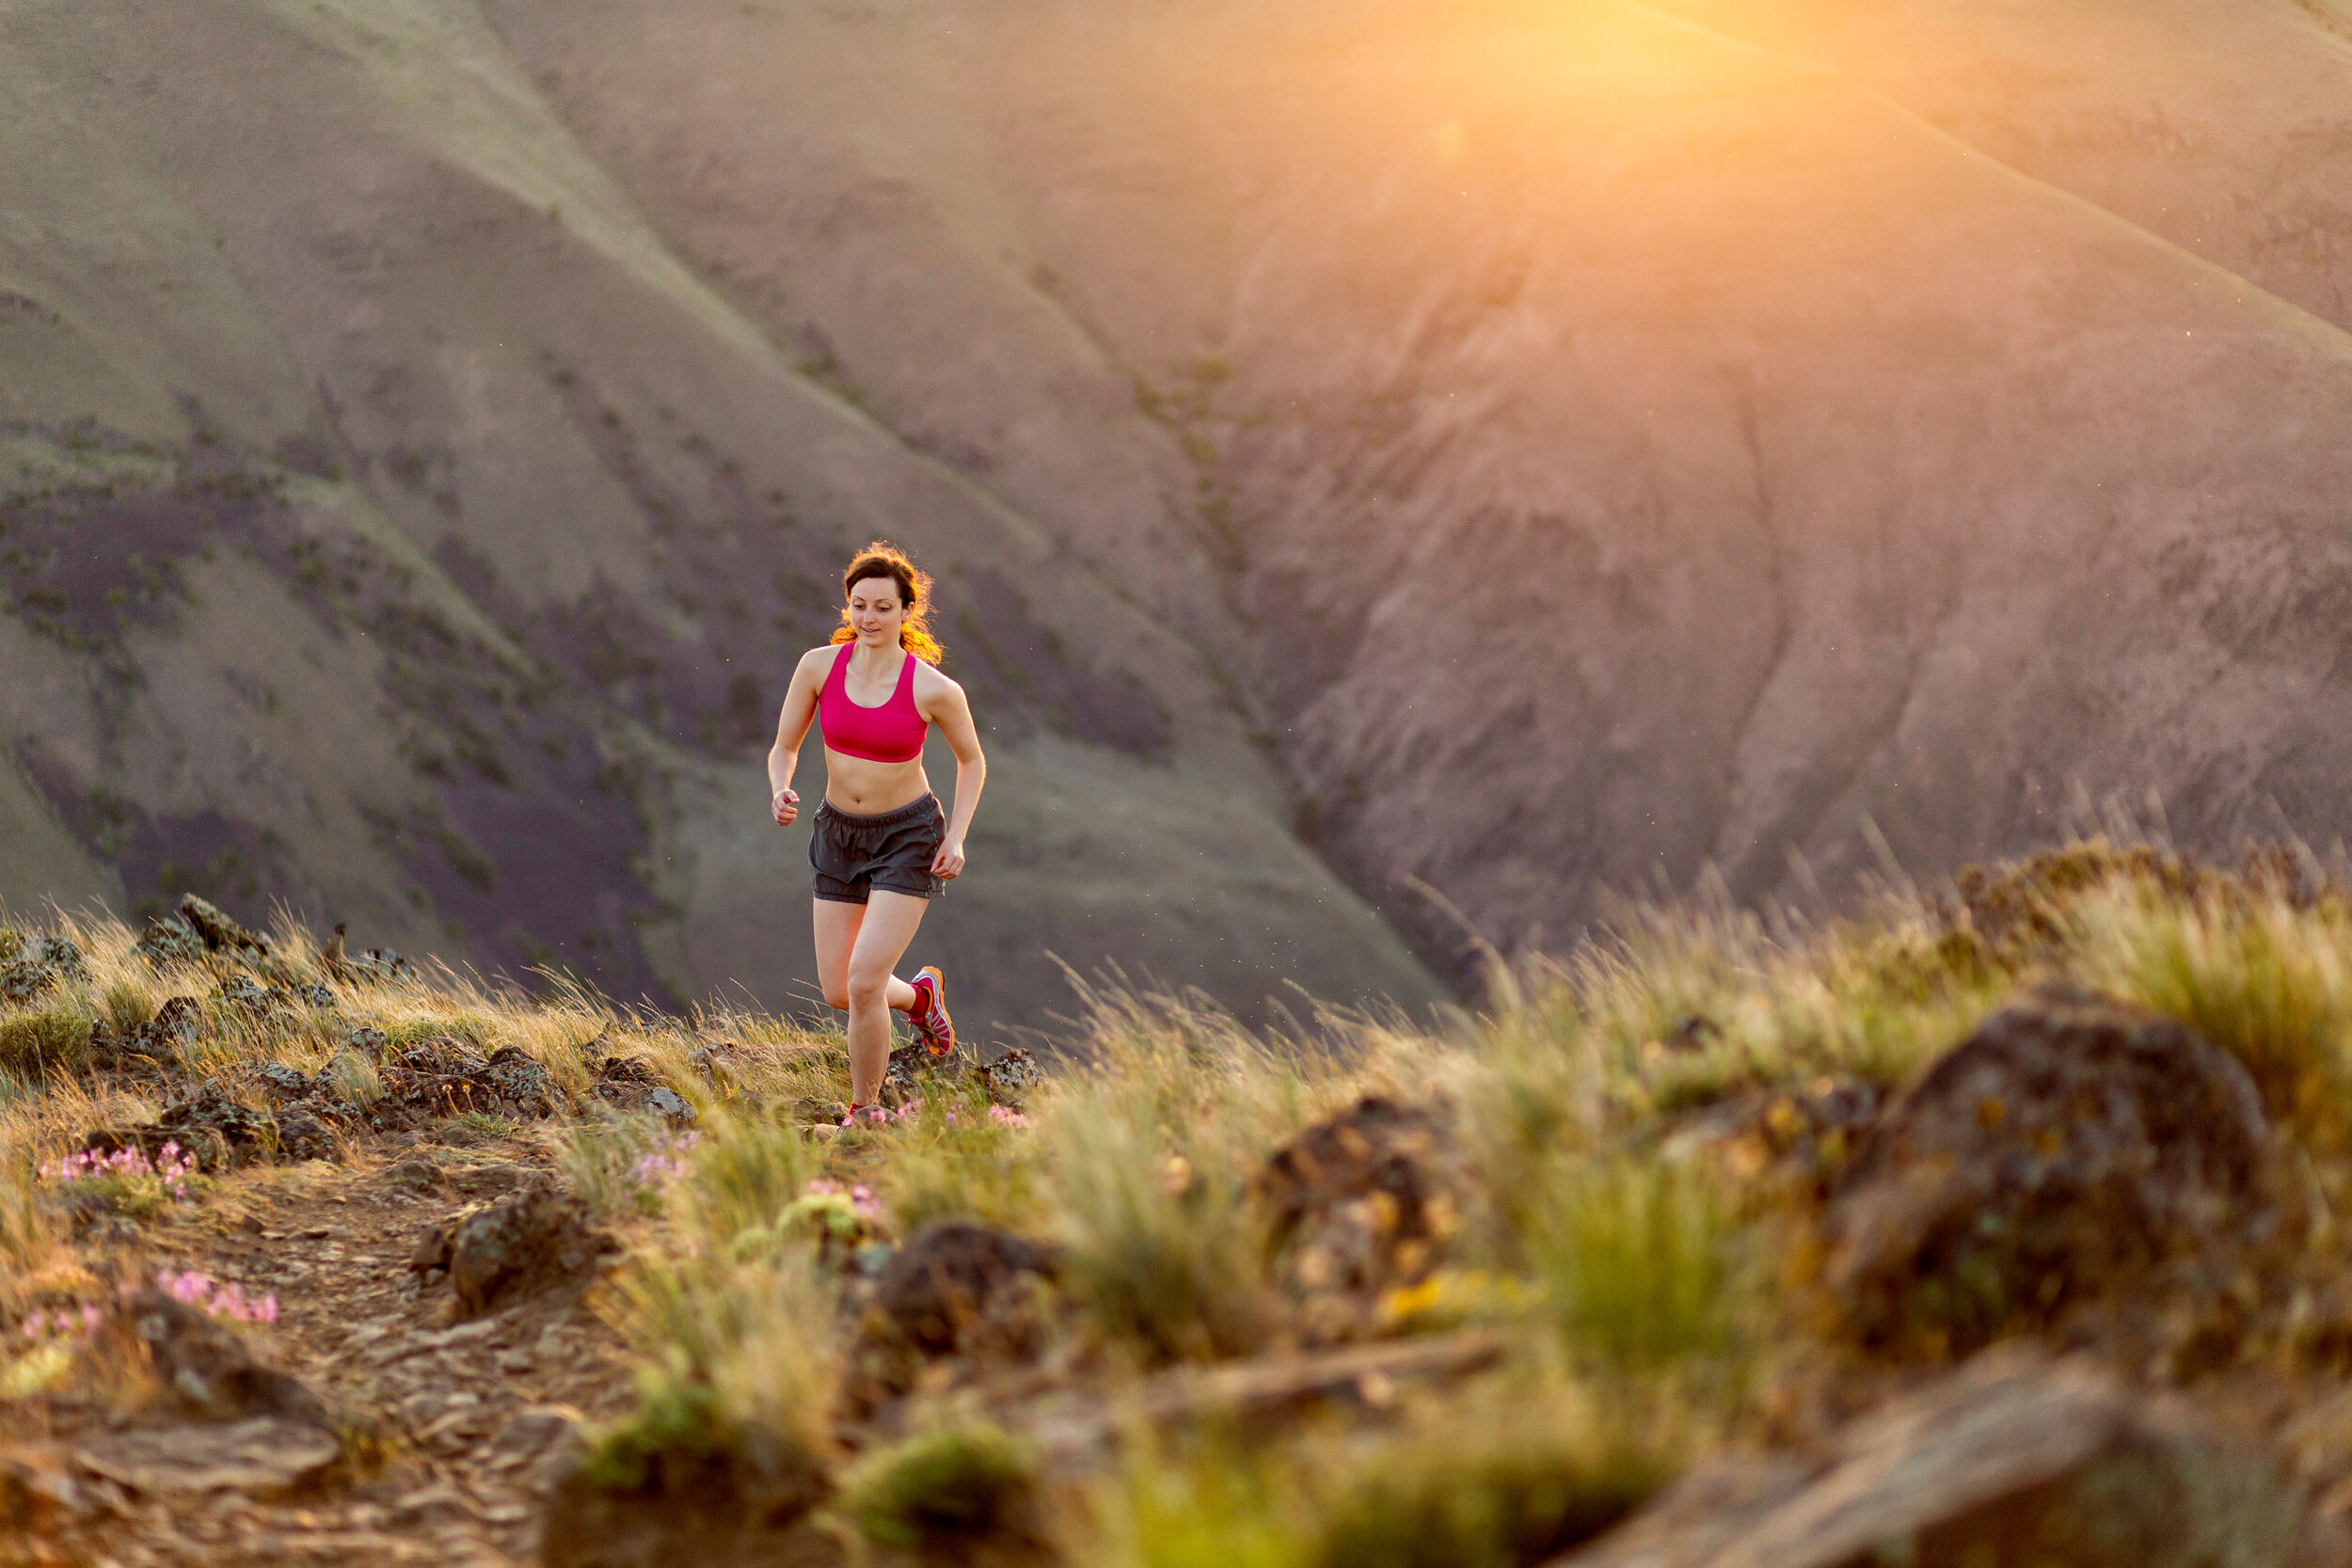  Adventure: Elizabeth Kovar trail running above Yakima Canyon at sunset, Cascade Foothills, Washington 